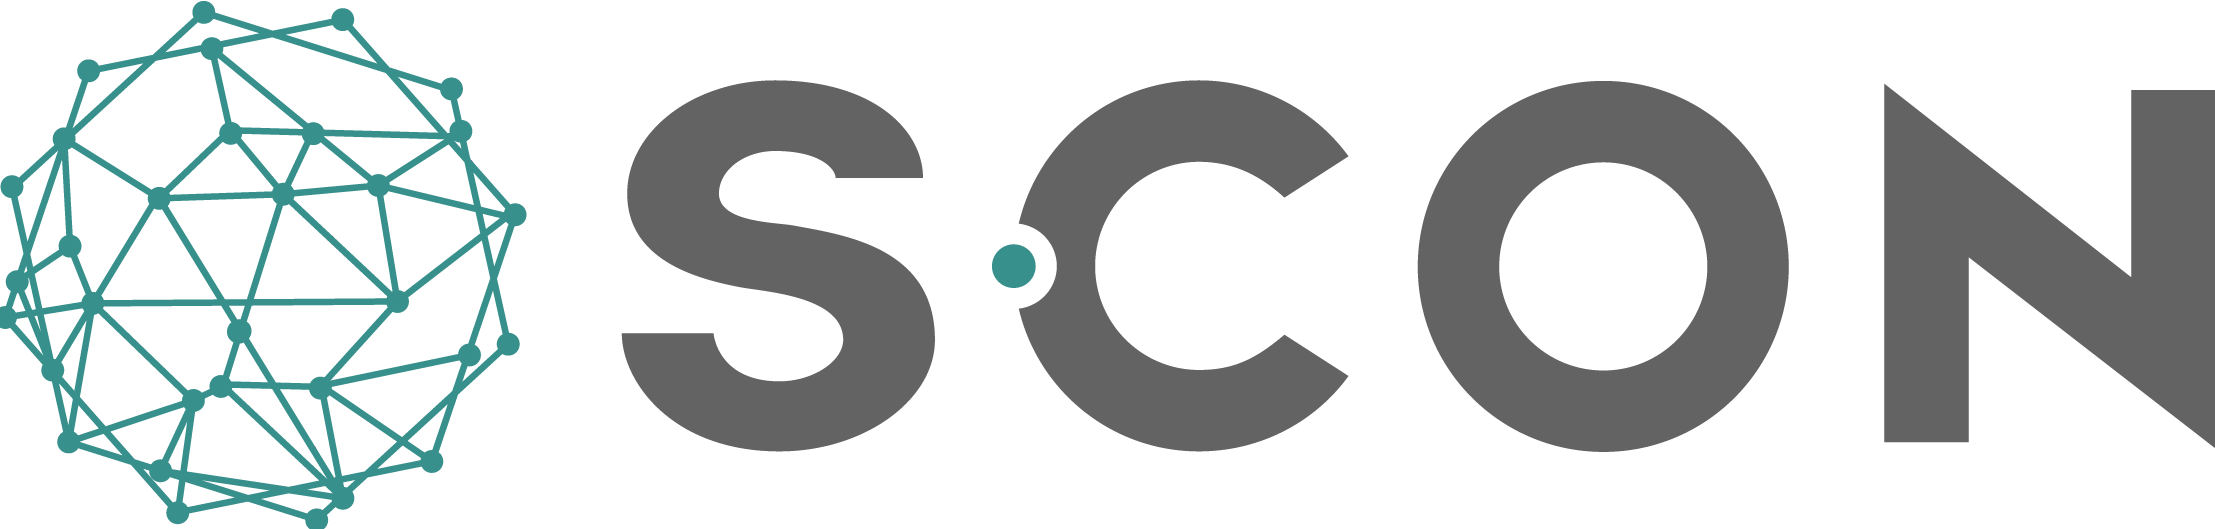 S-CON Datenschutz Logo